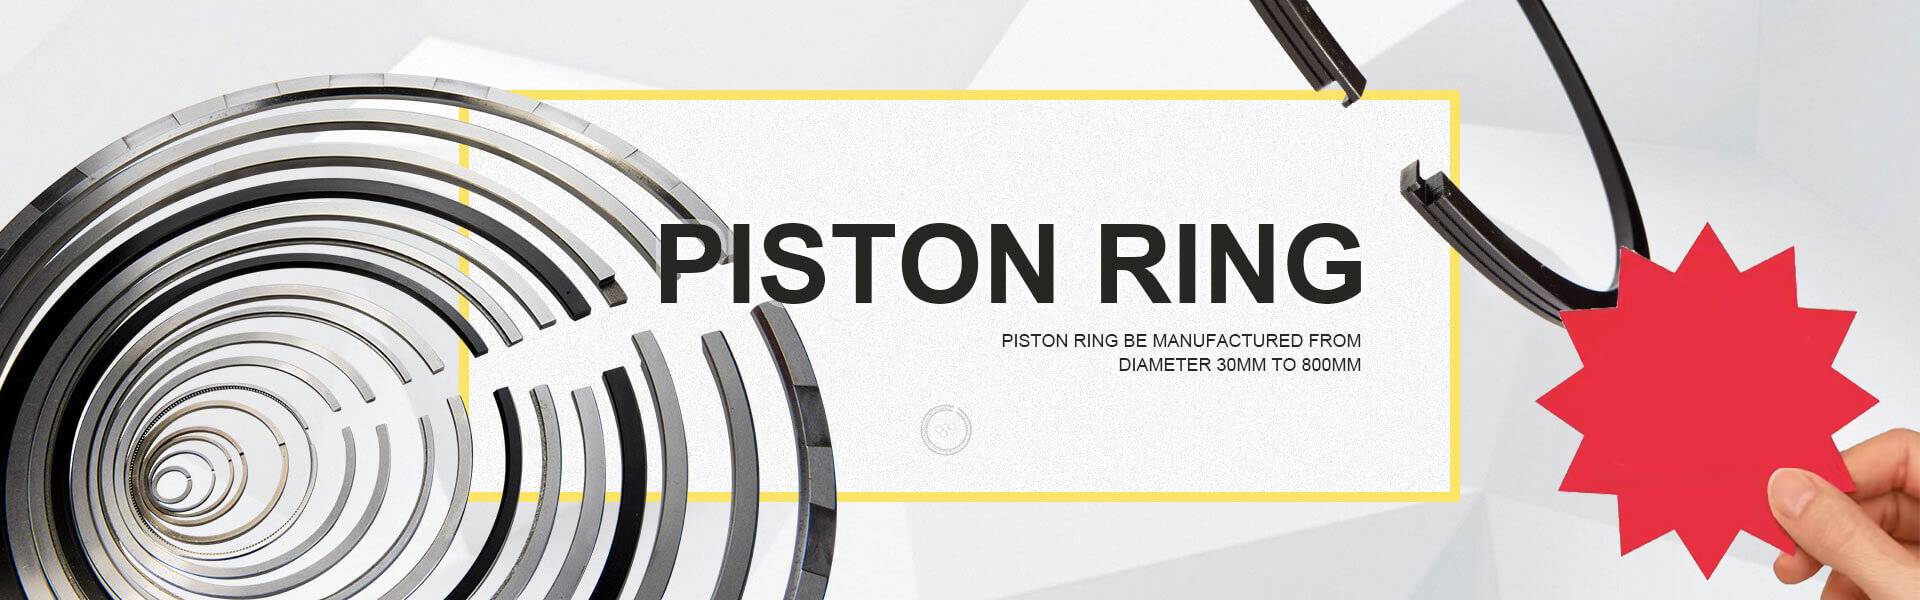 hc-engine-parts-poiston-ring-banner